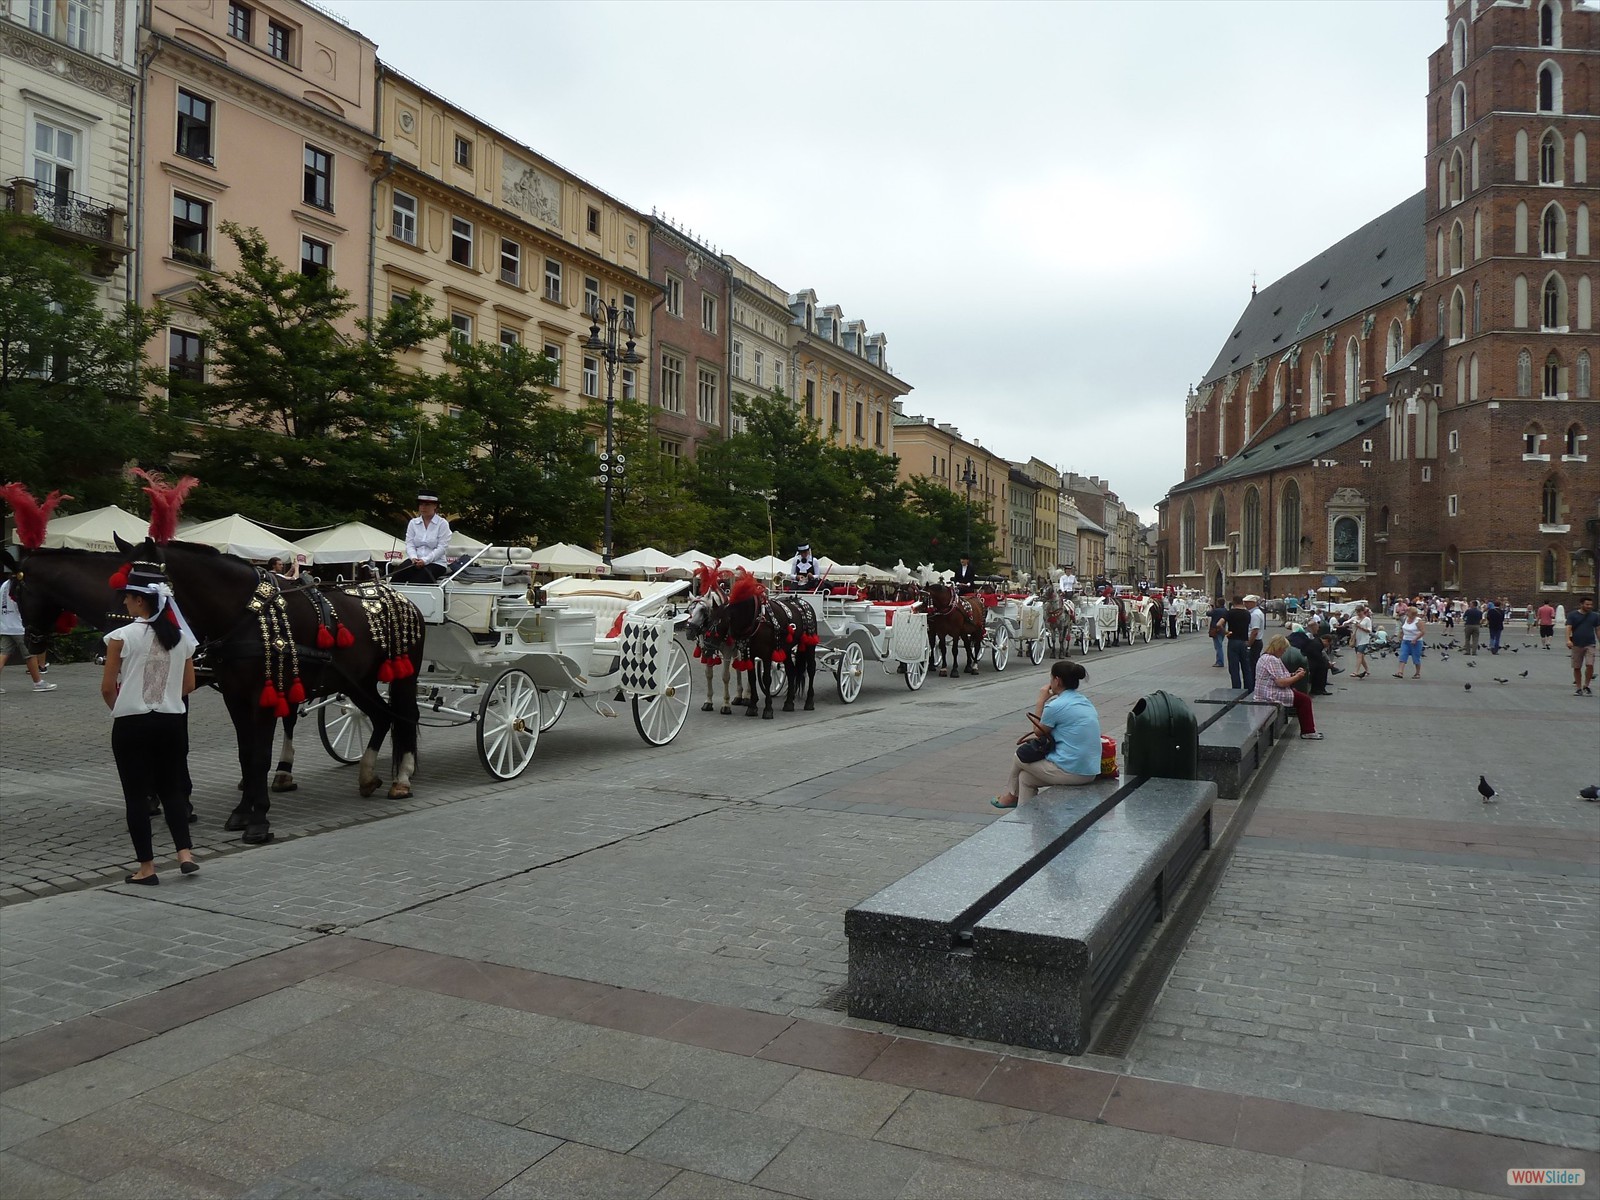 37 Kutschen auf dem Markt von Krakau